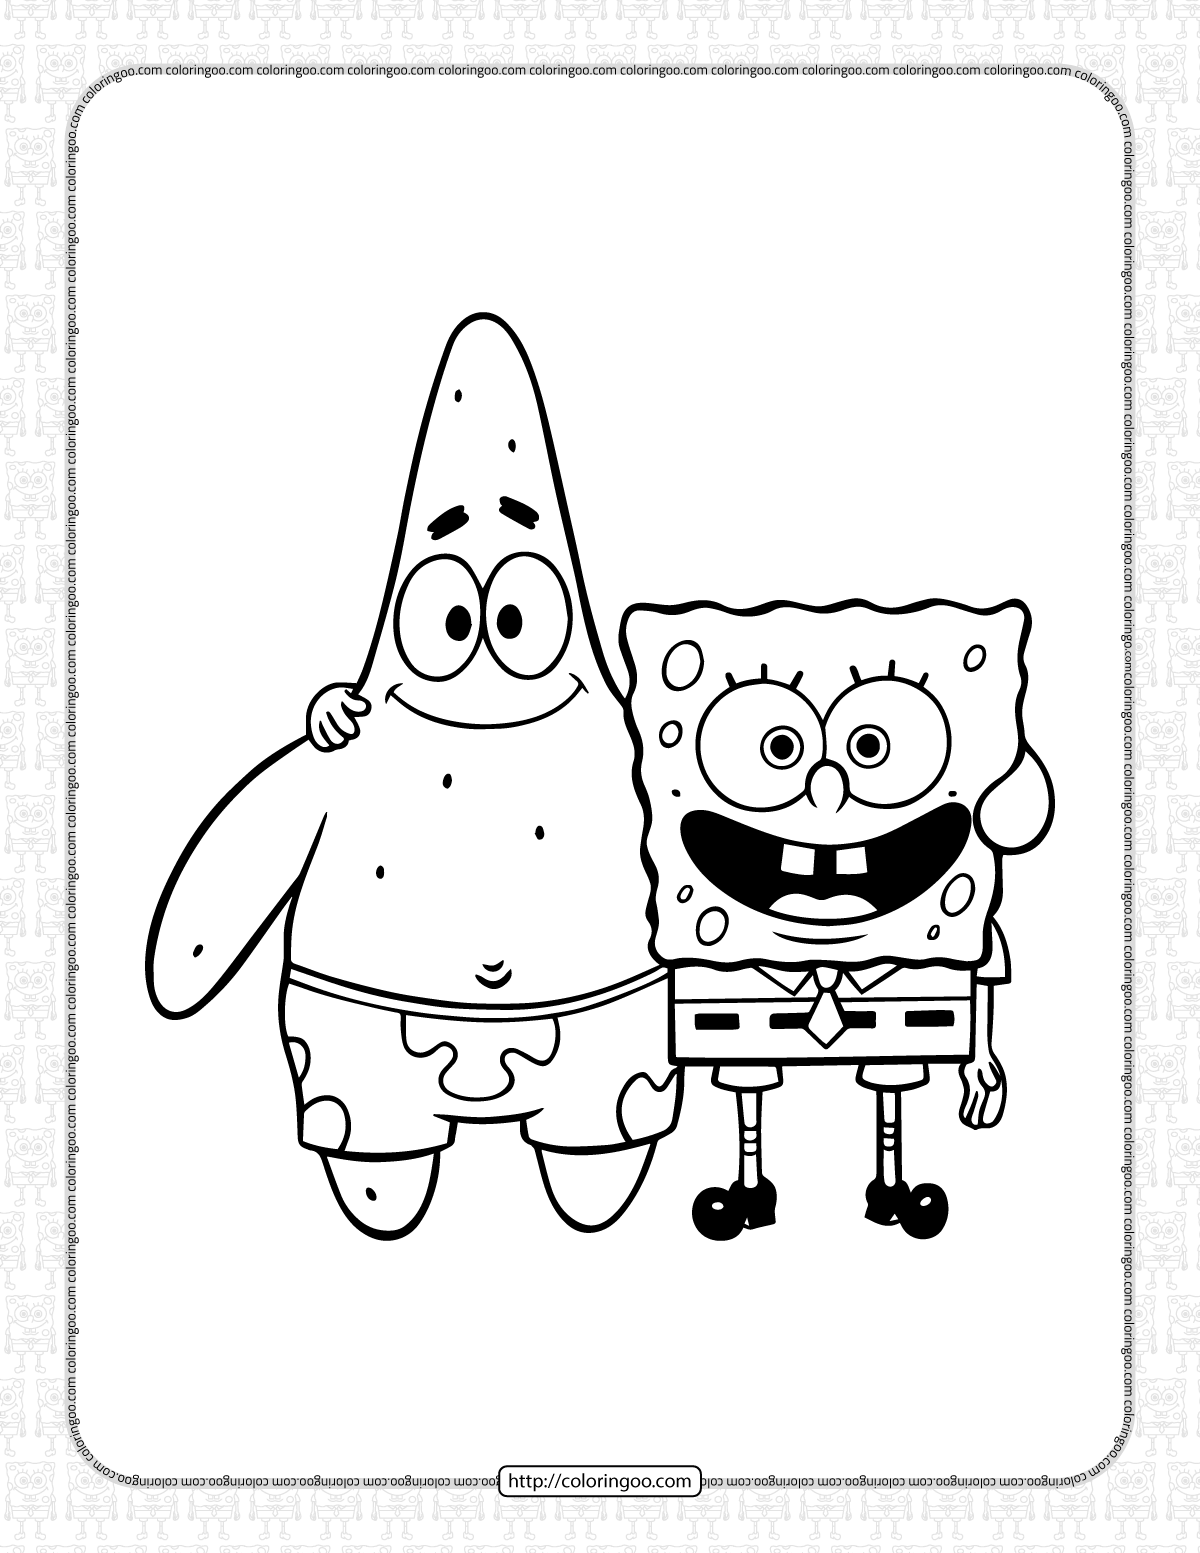 spongebob squarepants and patrick coloring sheet